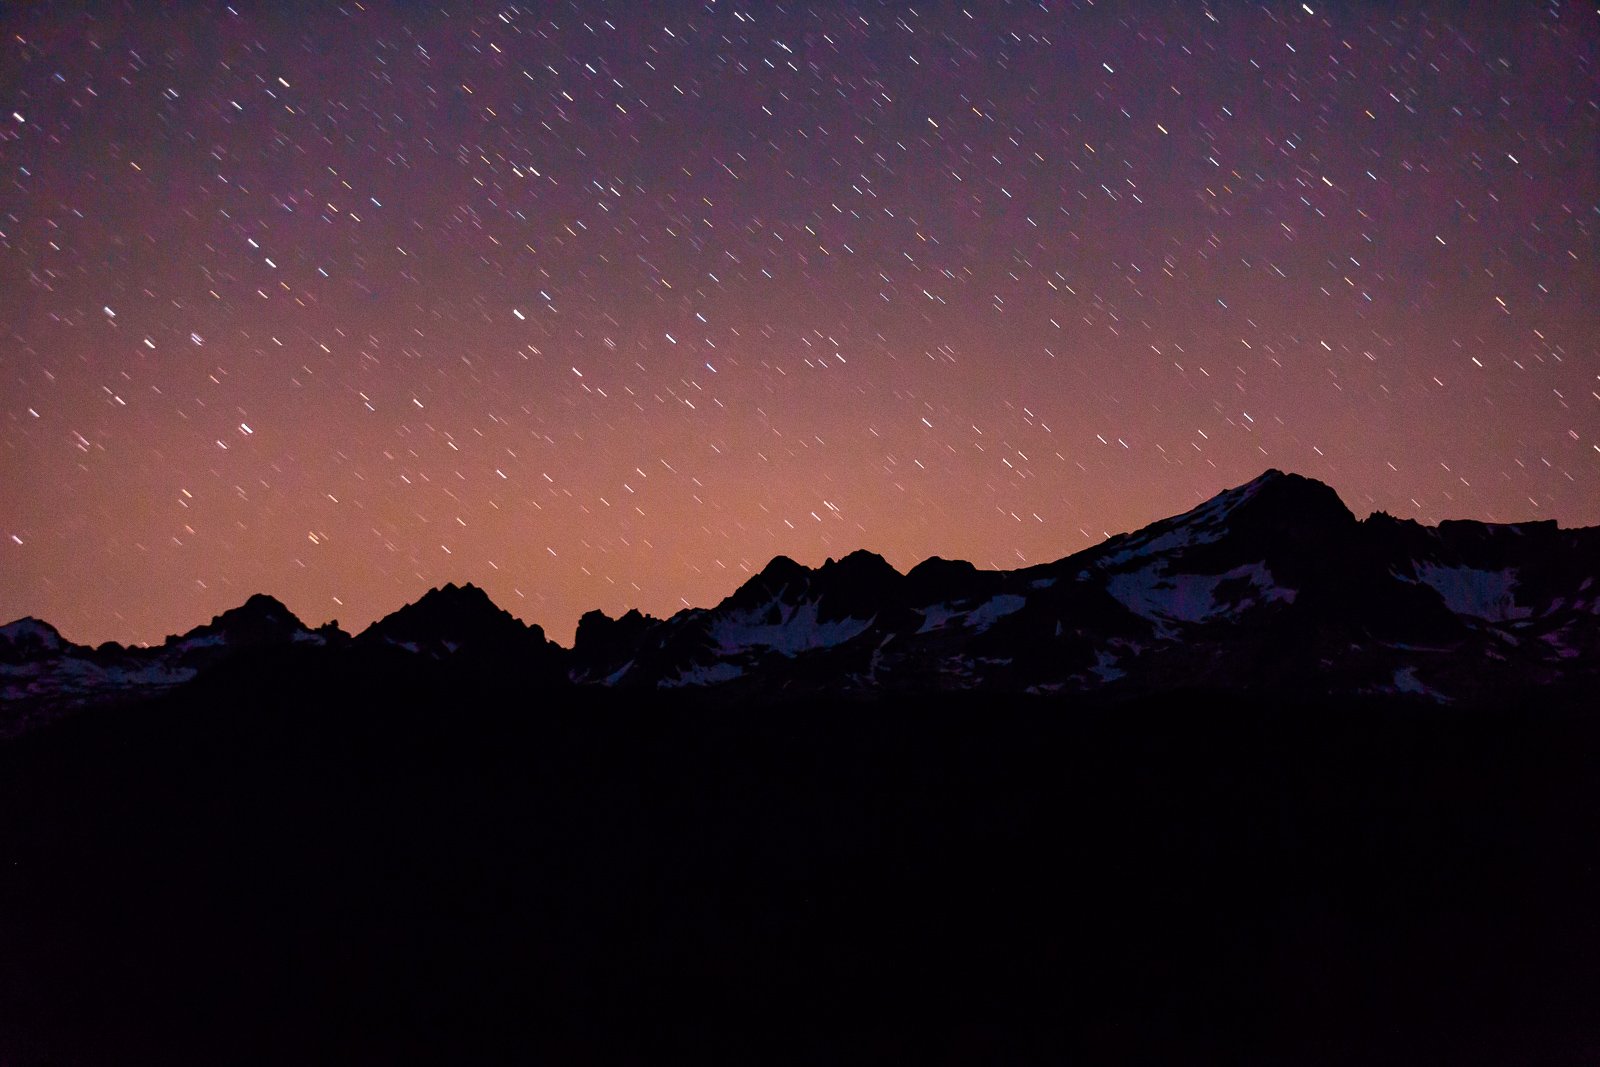 Central Idaho Dark Sky Reserve photo by Ray J. Gadd